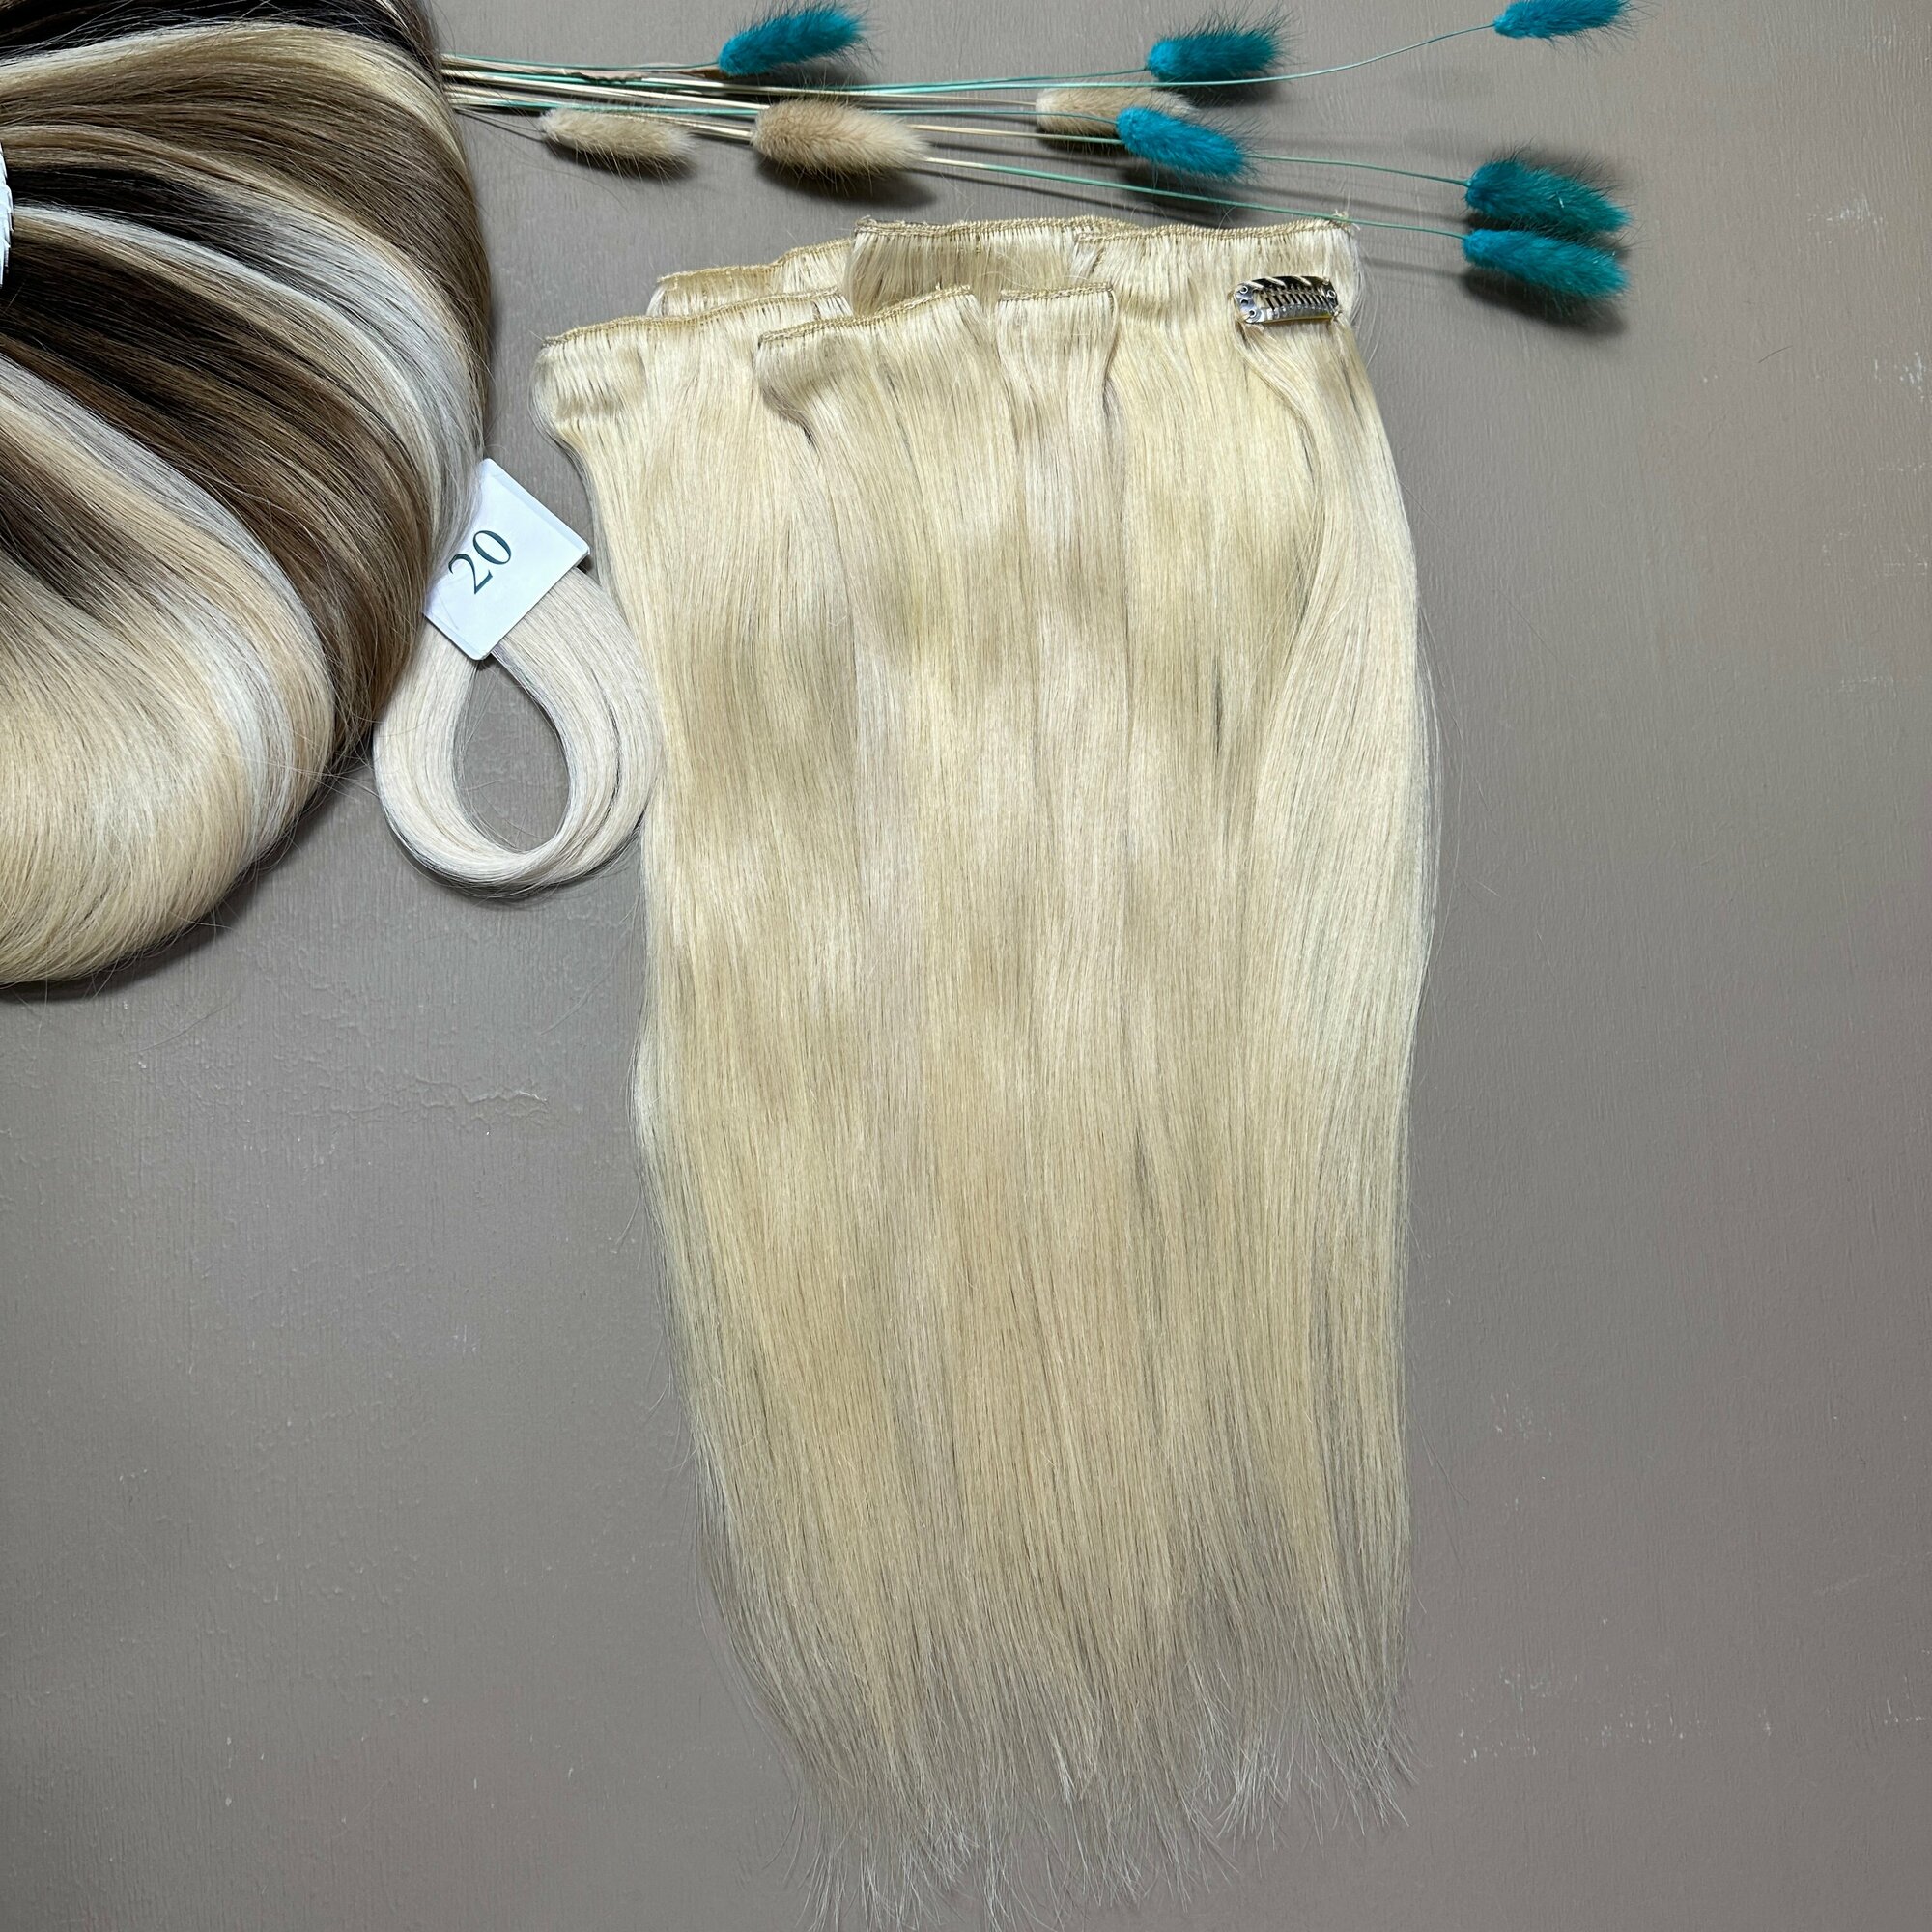 Волосы славянские стандарт на заколках Belli Capelli 45 см №20.1 (набор из 7 заколок)